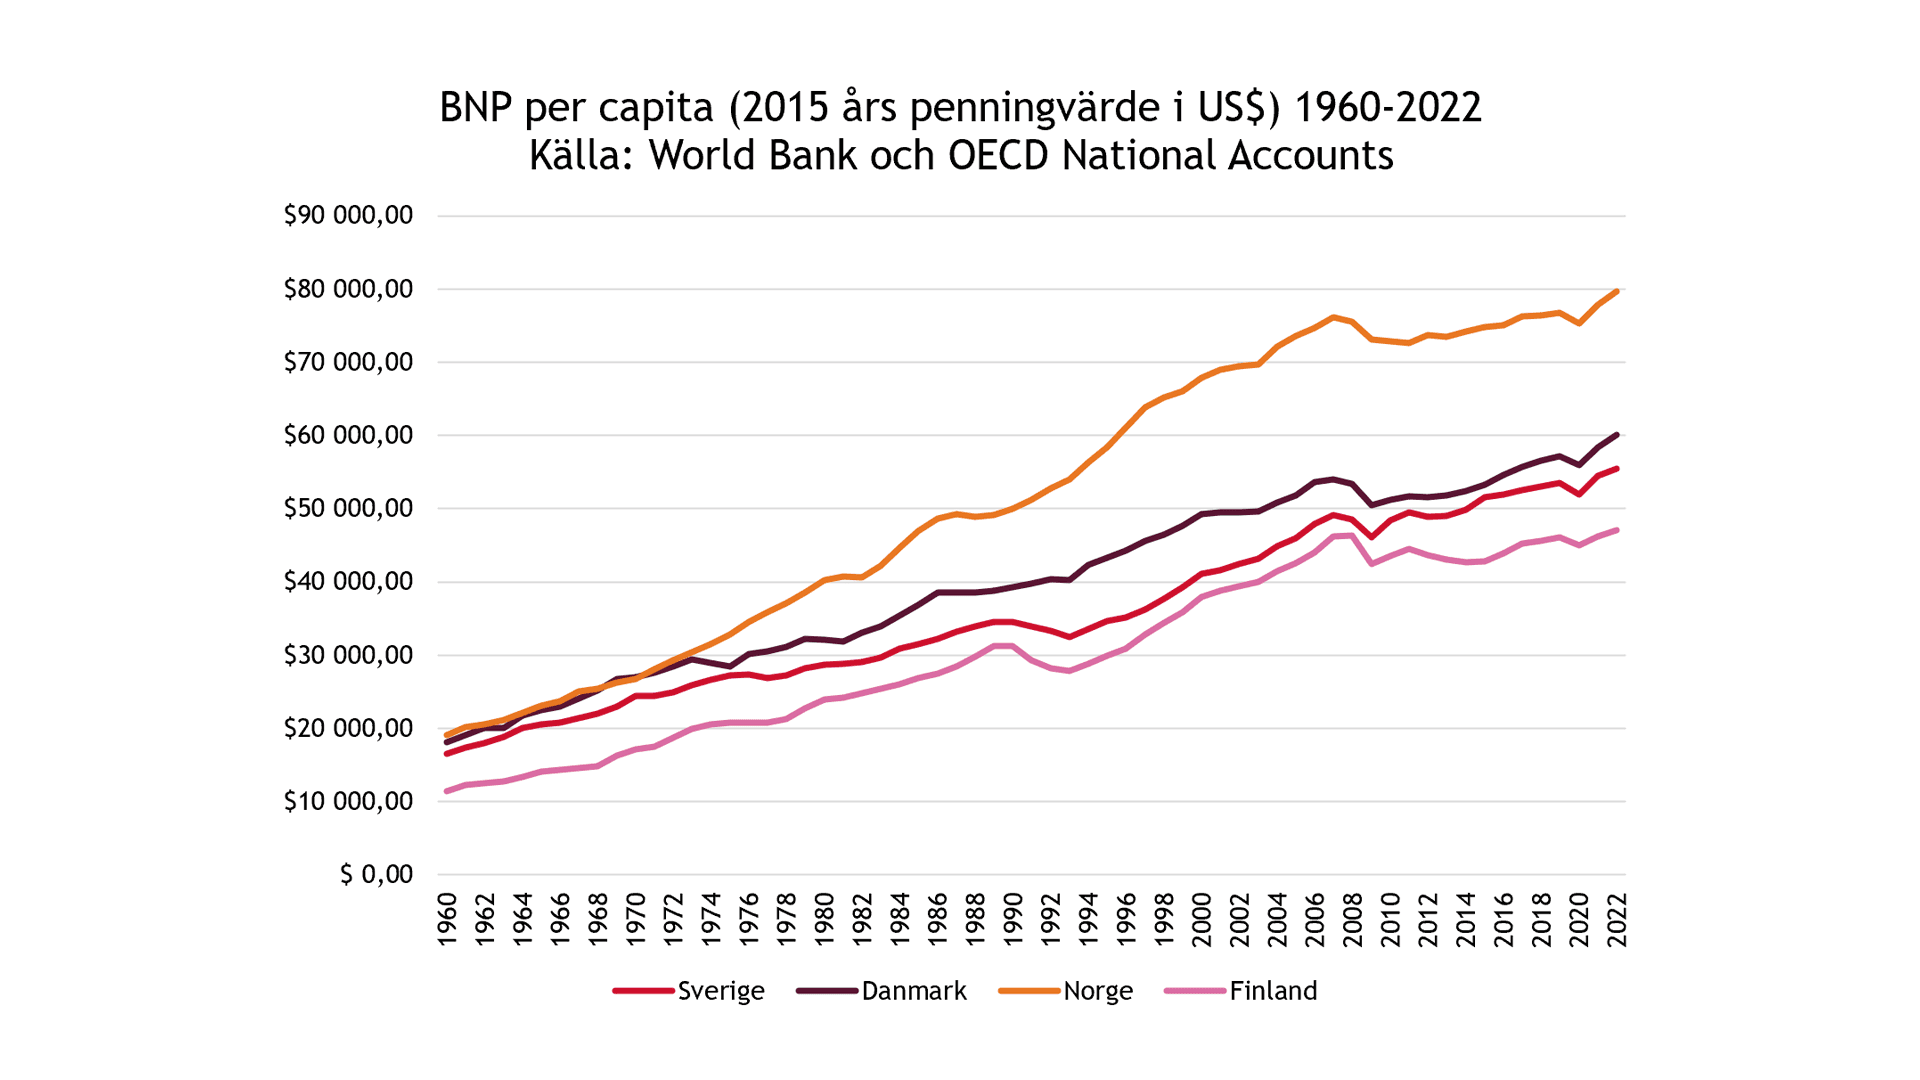 BNP per capita (2015 års penningvärde i US$) 1960-2022. Källa: World Bank och OECD National Accounts.